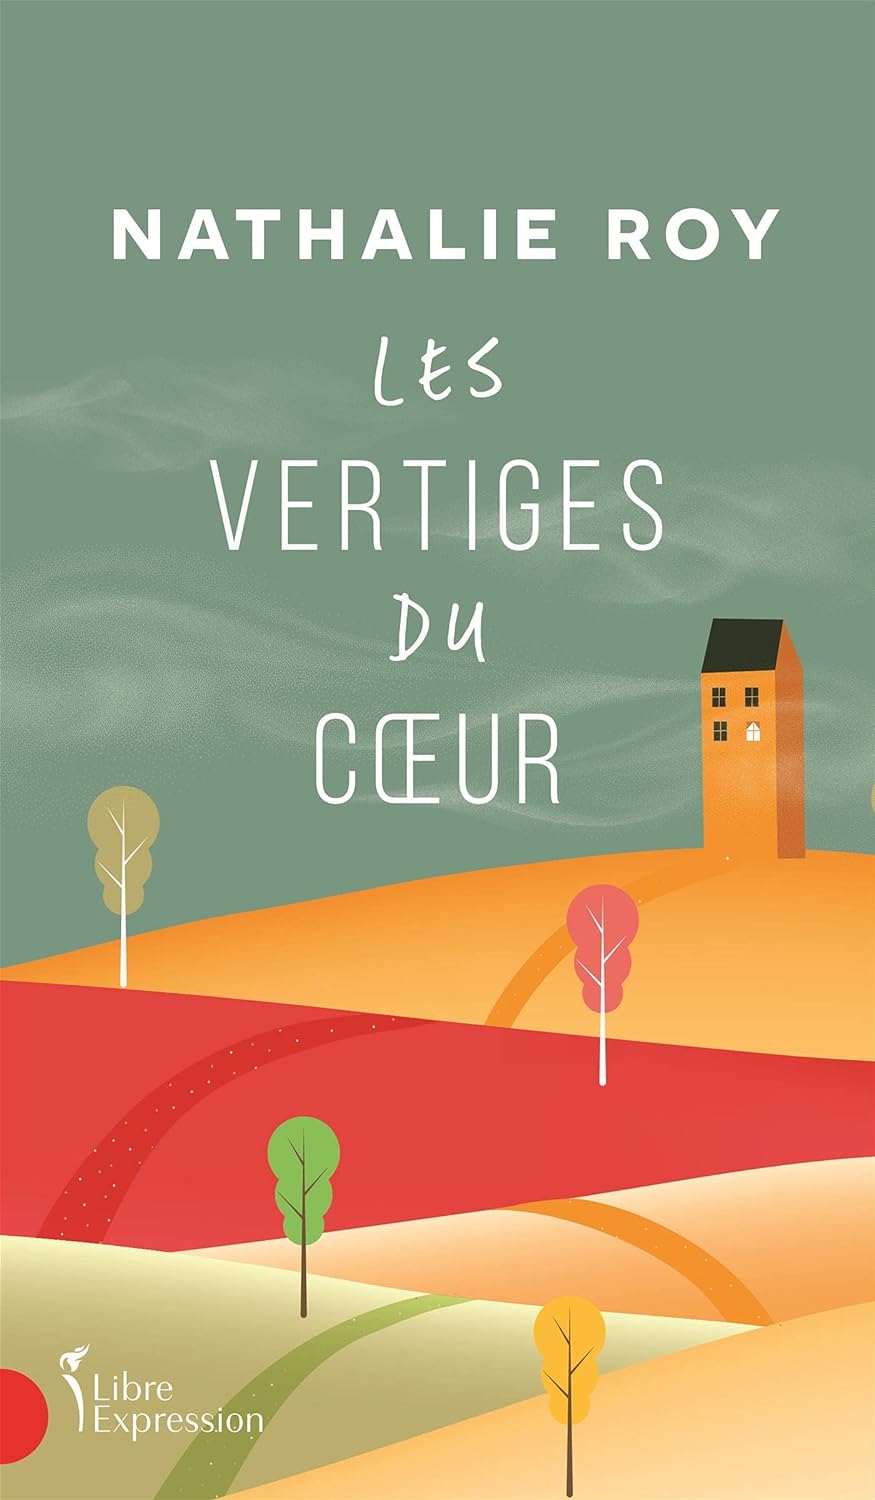 Les Vertiges du coeur: VERTIGES DU COEUR -LES [NUM] (French Edition) - Nathalie Roy